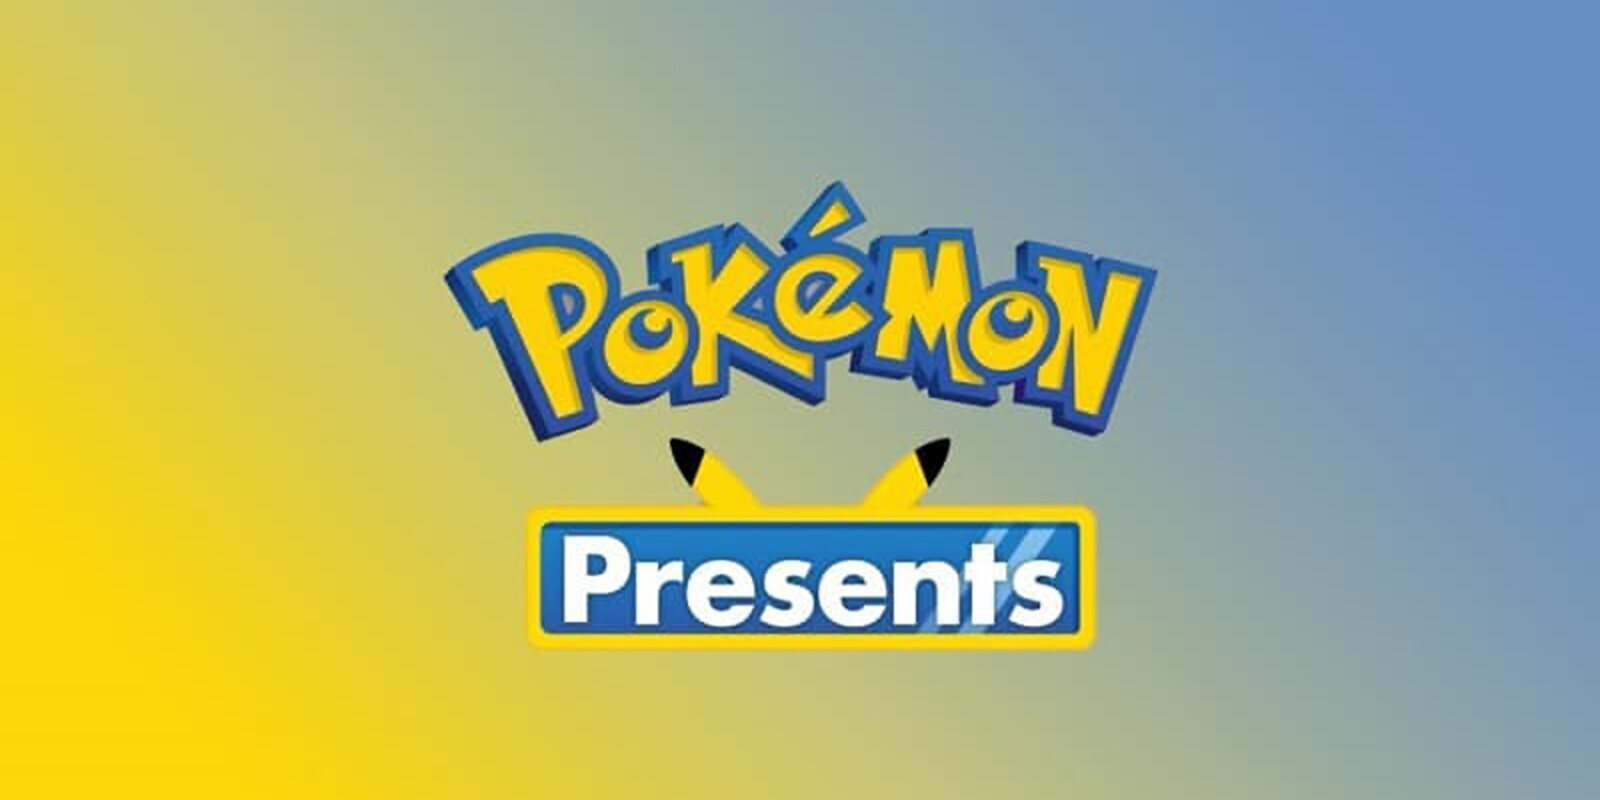 Para sorpresa de nadie tendremos Pokémon Presents el 27 de febrero